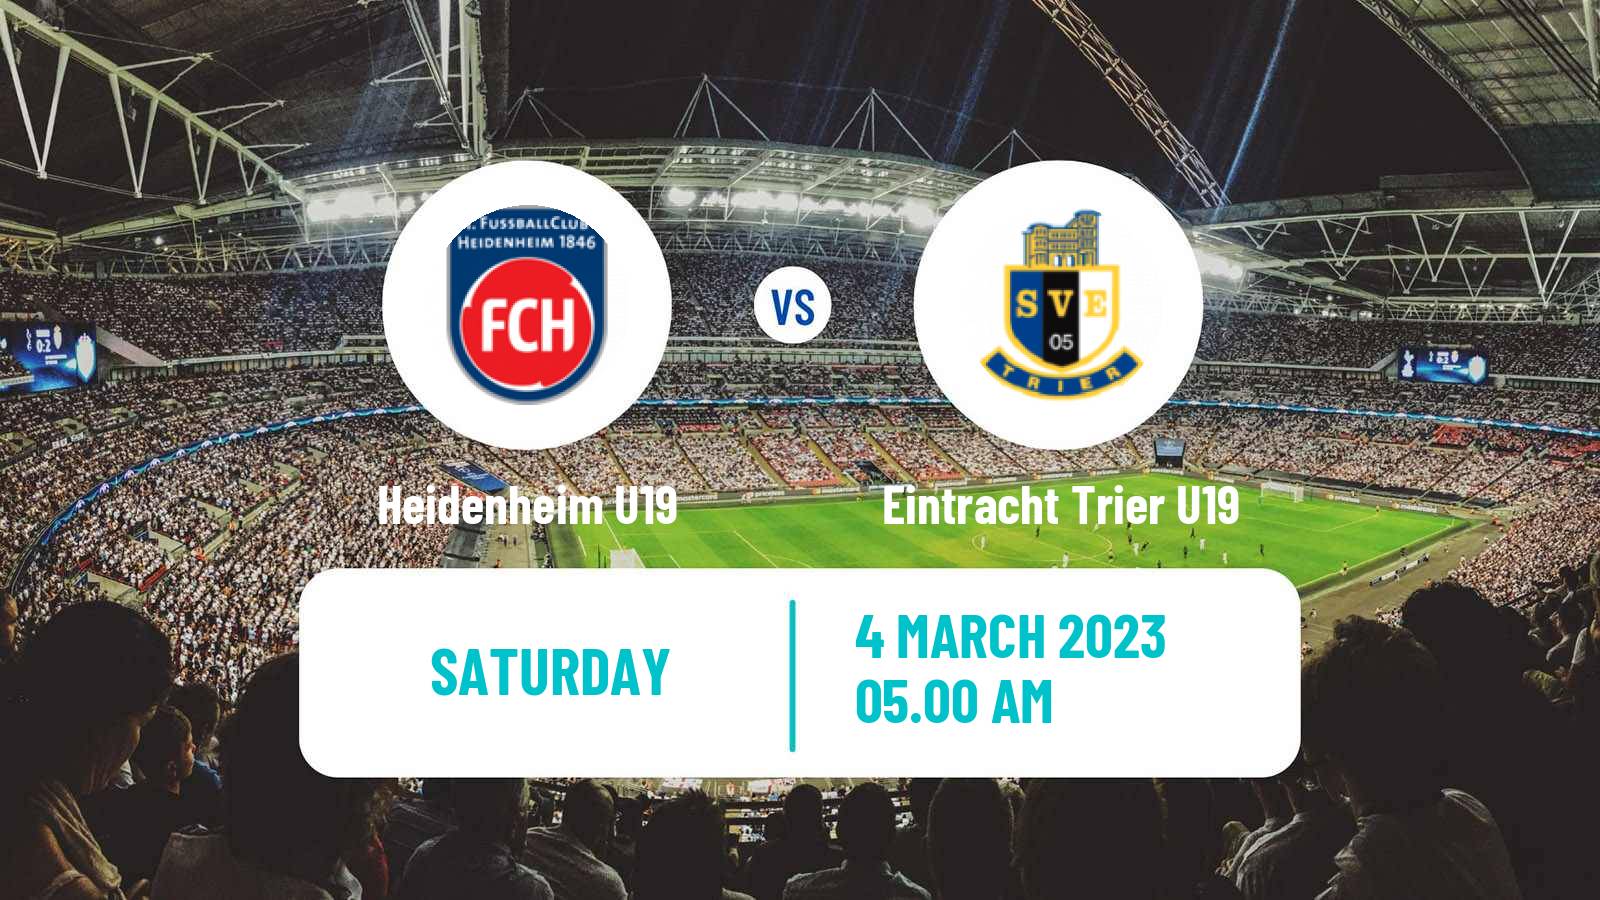 Soccer German Junioren Bundesliga South Heidenheim U19 - Eintracht Trier U19